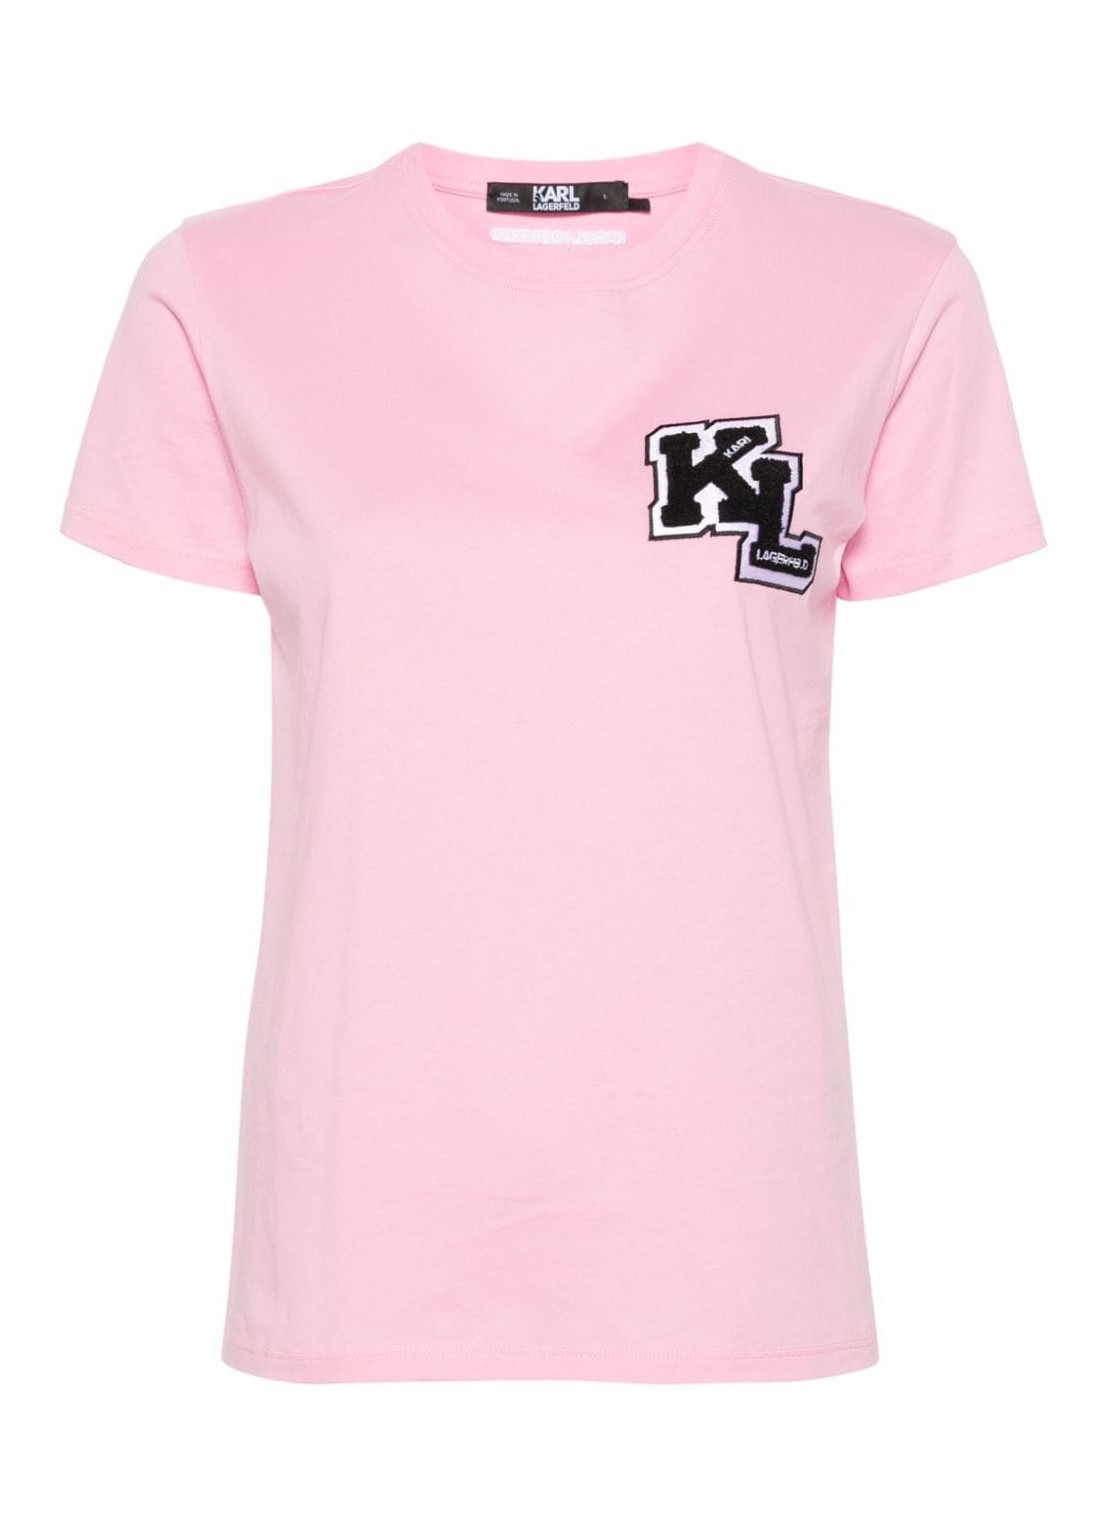 Top karl lagerfeld top woman kl logo t-shirt 240w1714 212 talla XL
 